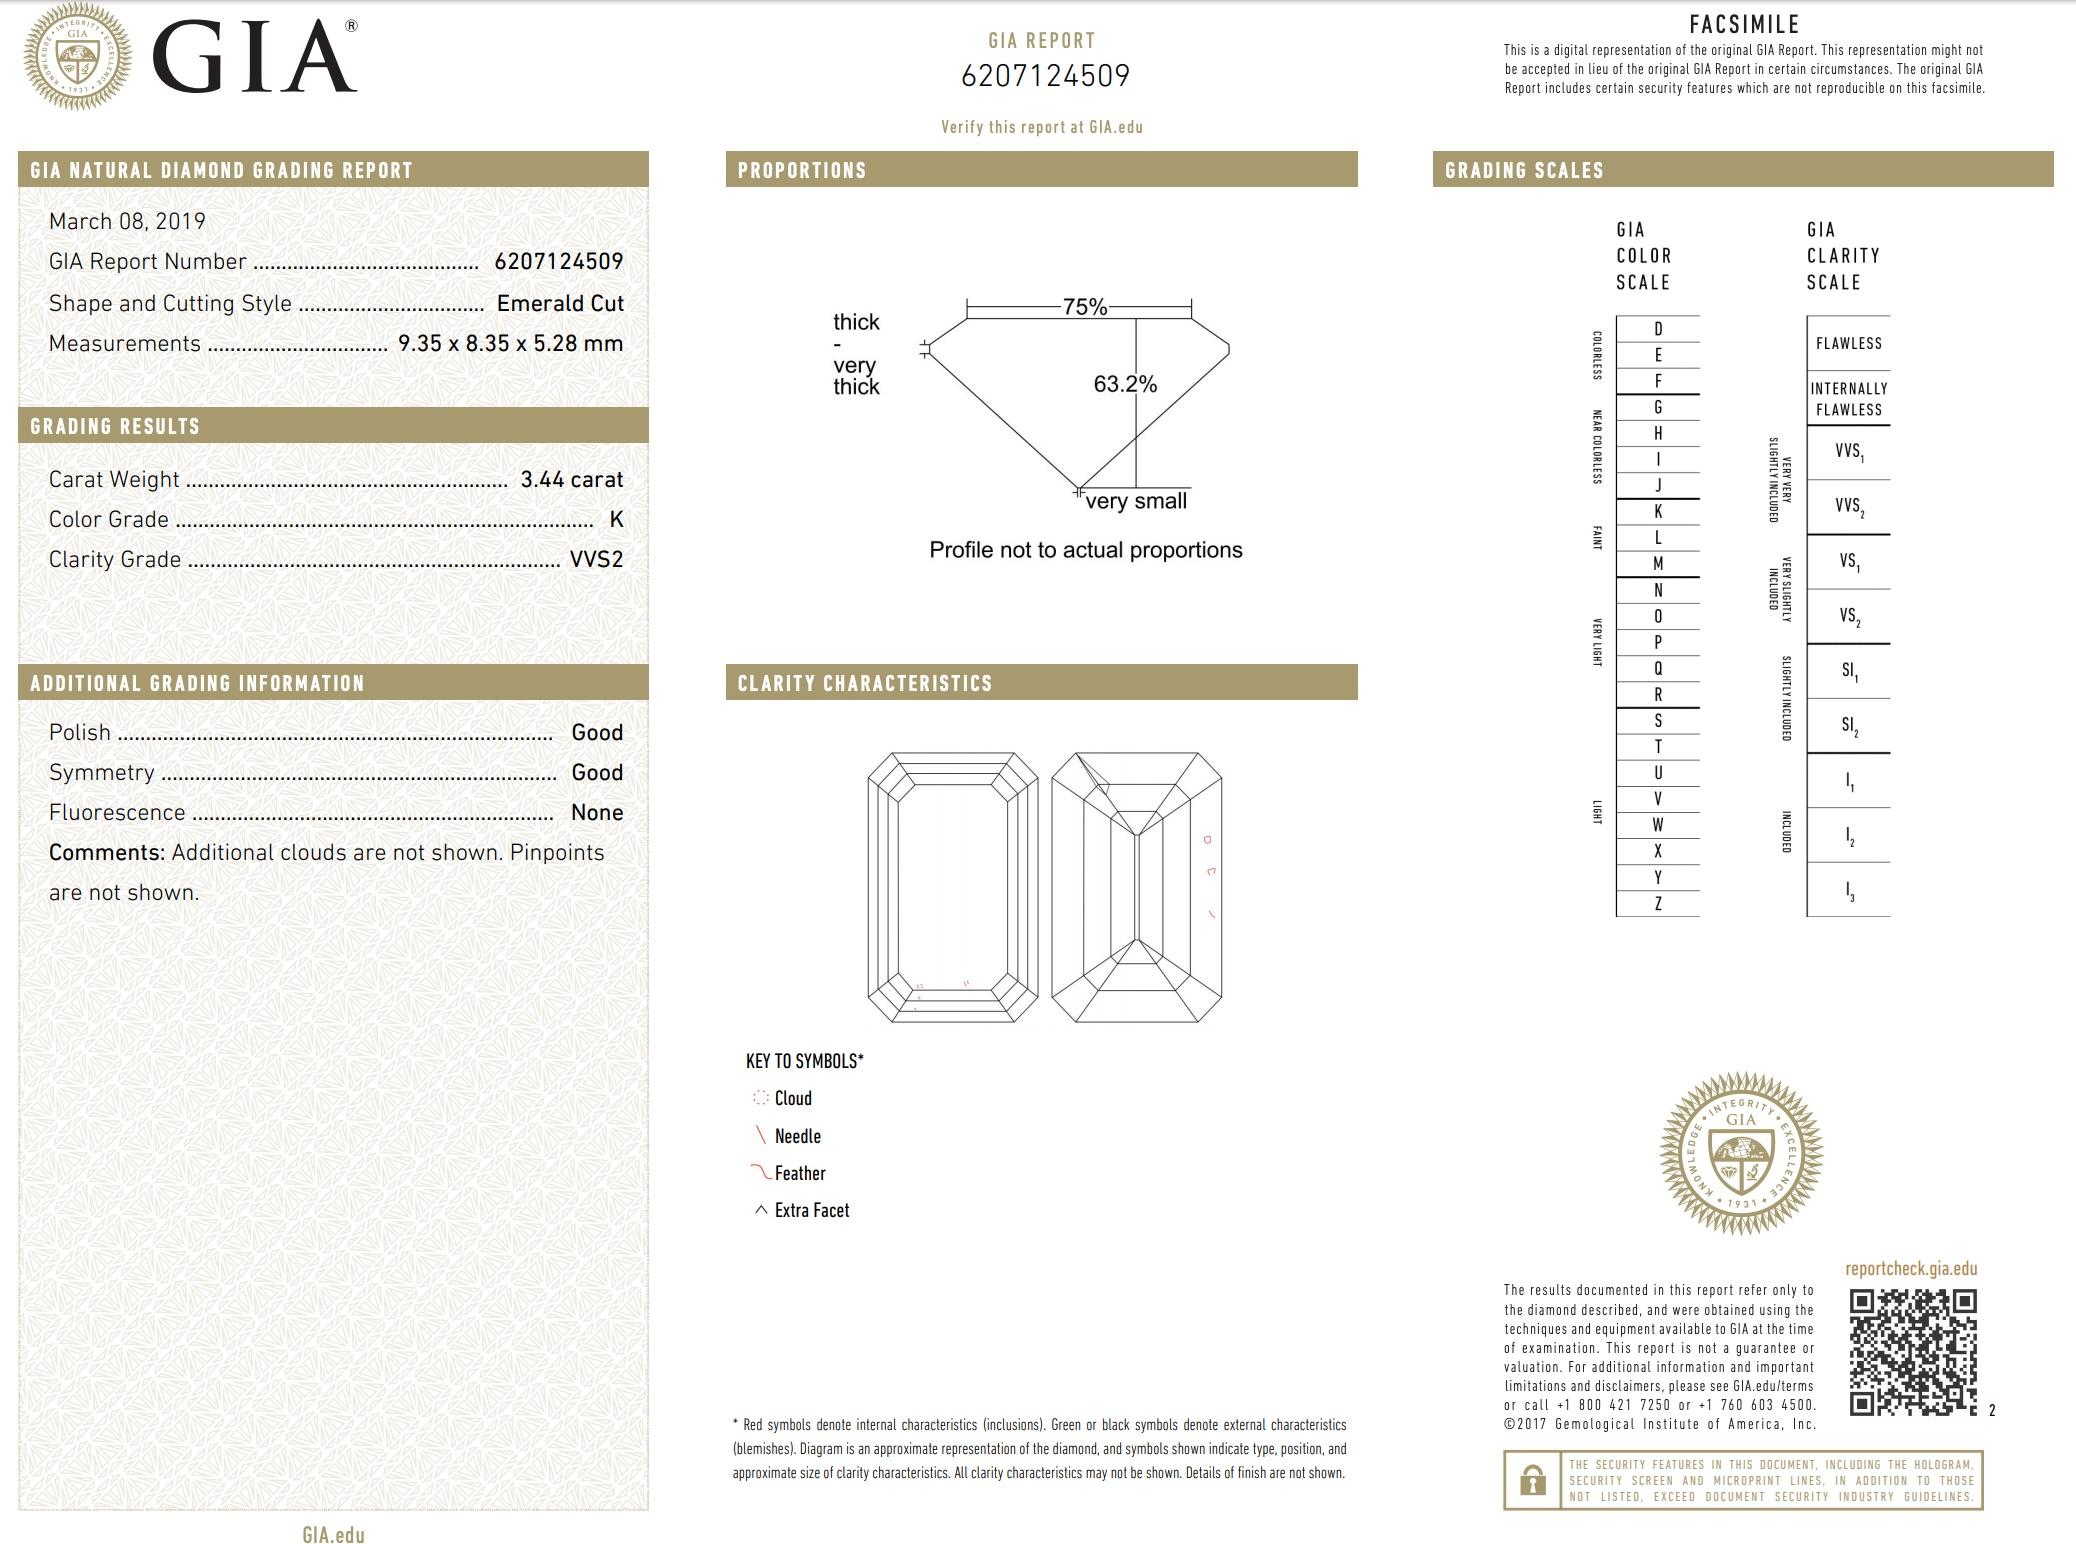 Modern Jack Weir & Sons GIA 3.44 Carat Diamond Platinum Ring